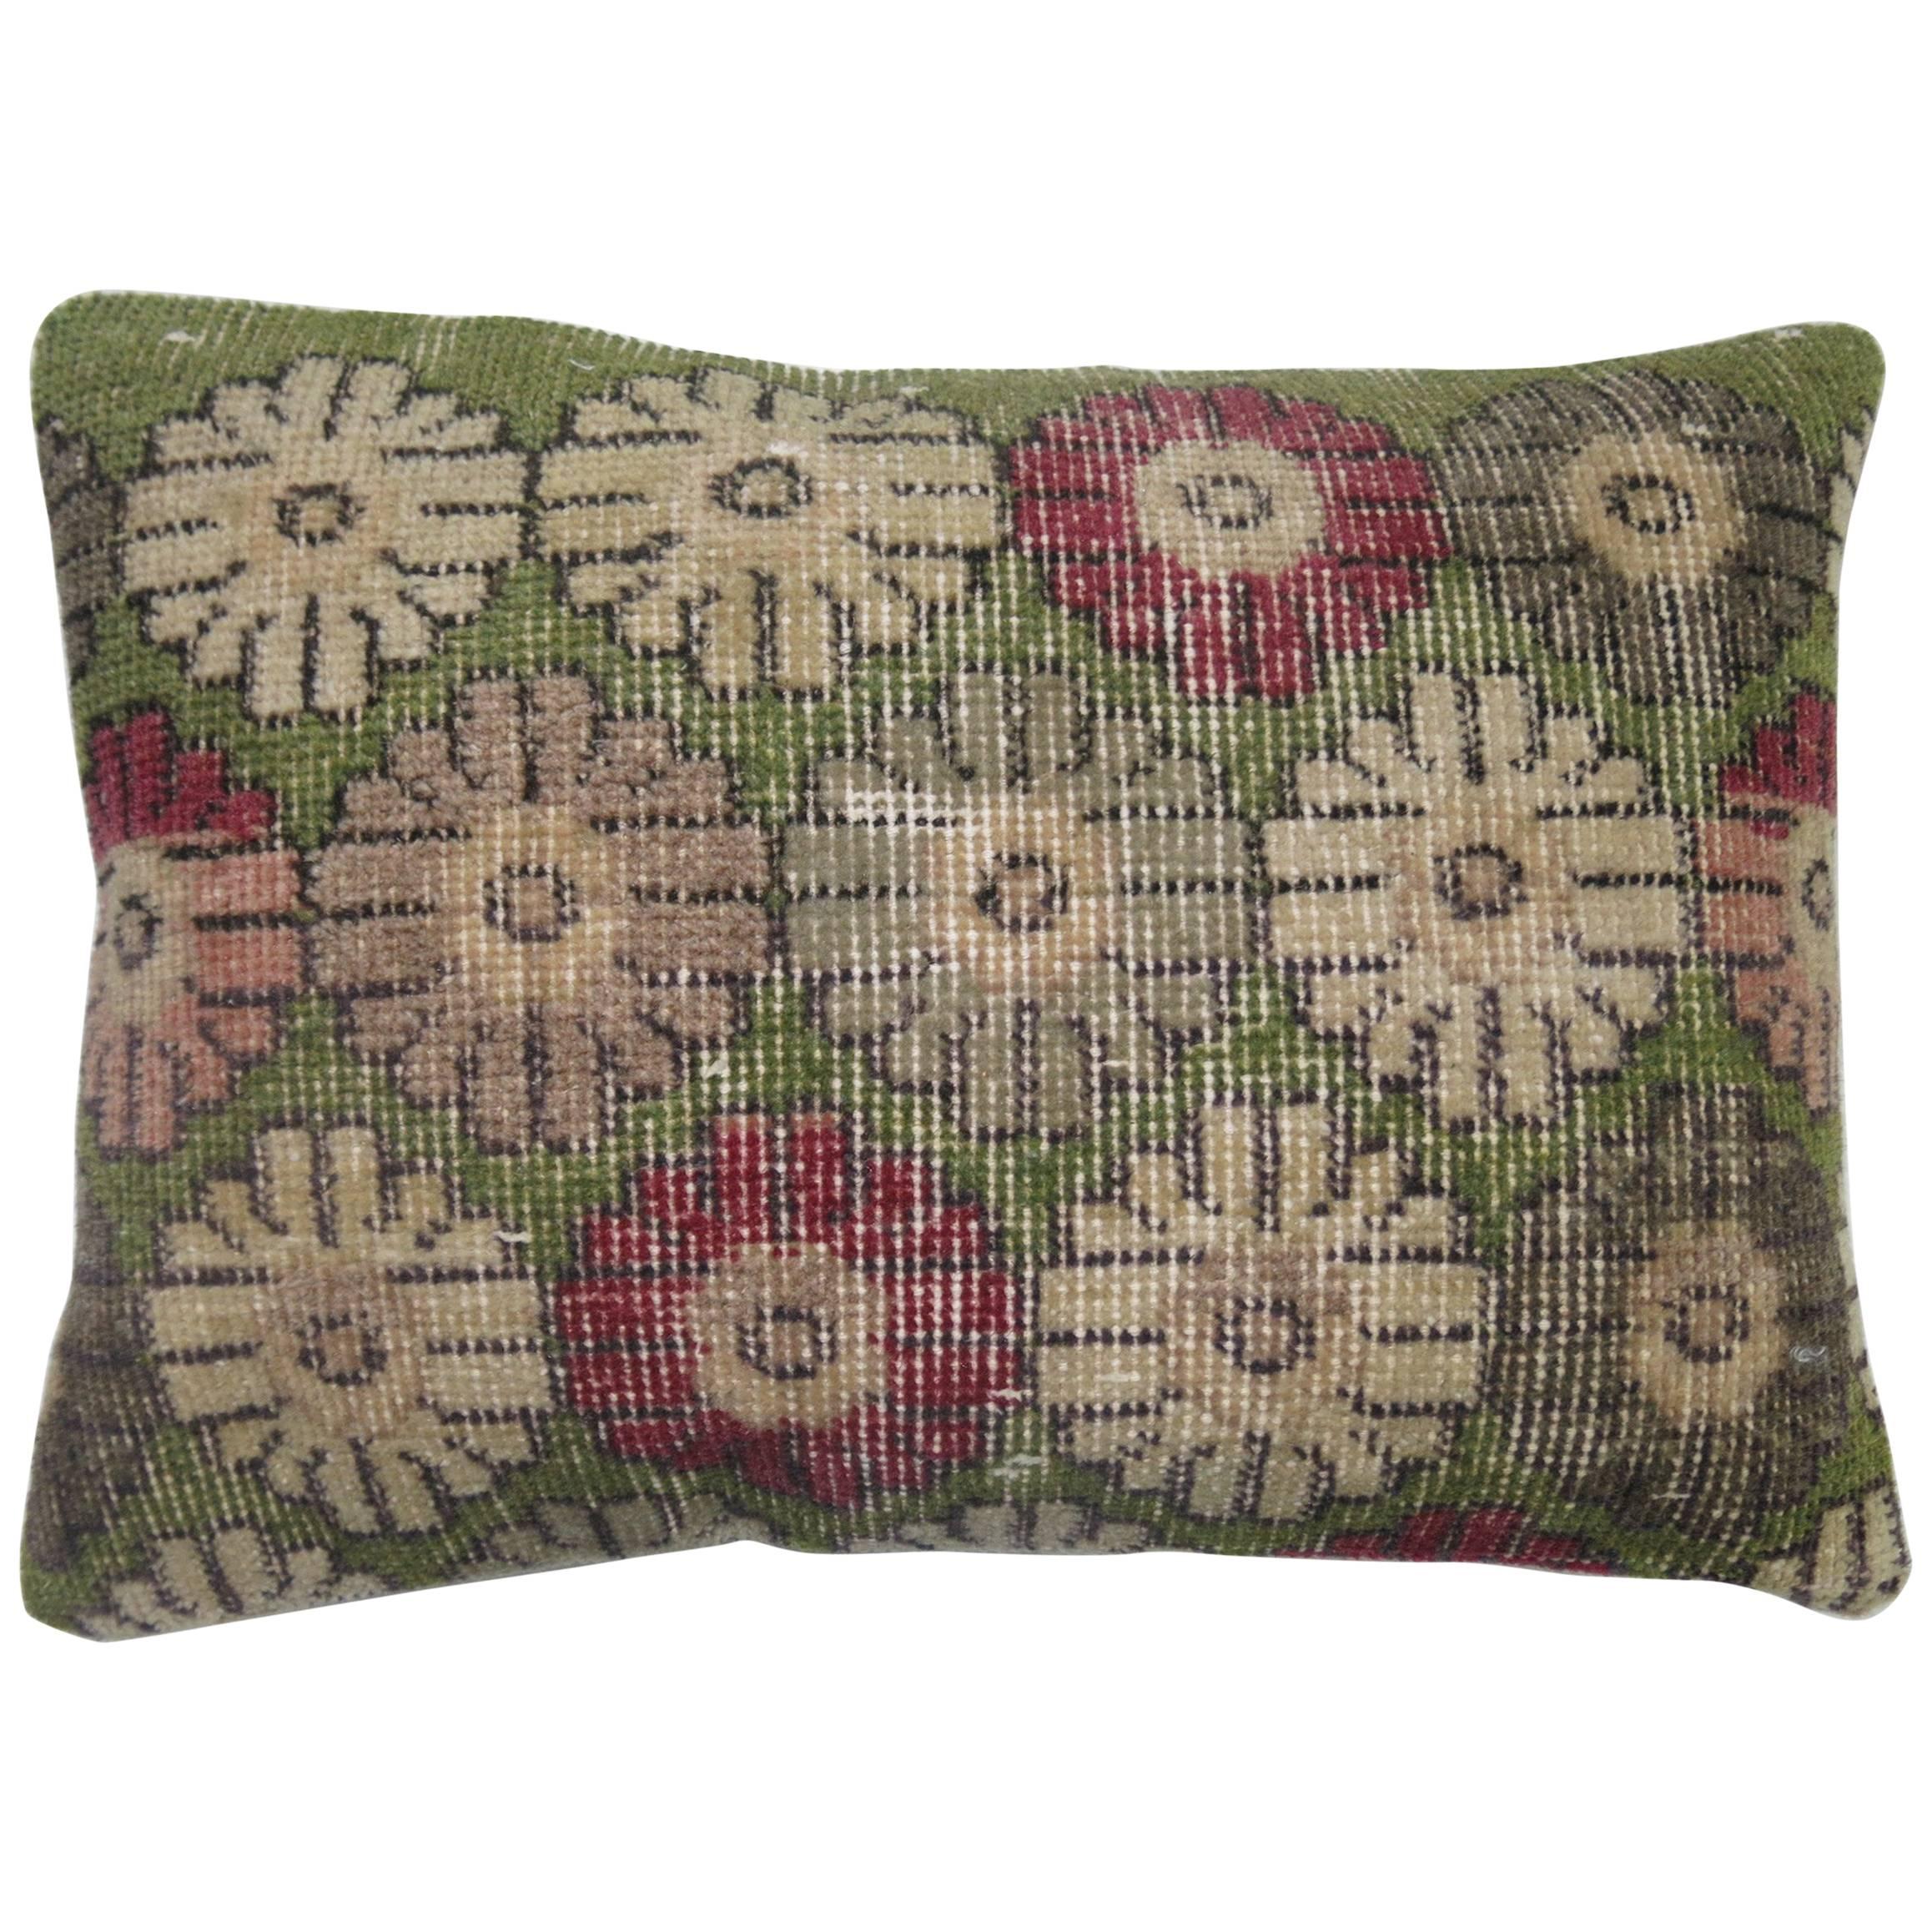 Turkish Deco Rug Pillow